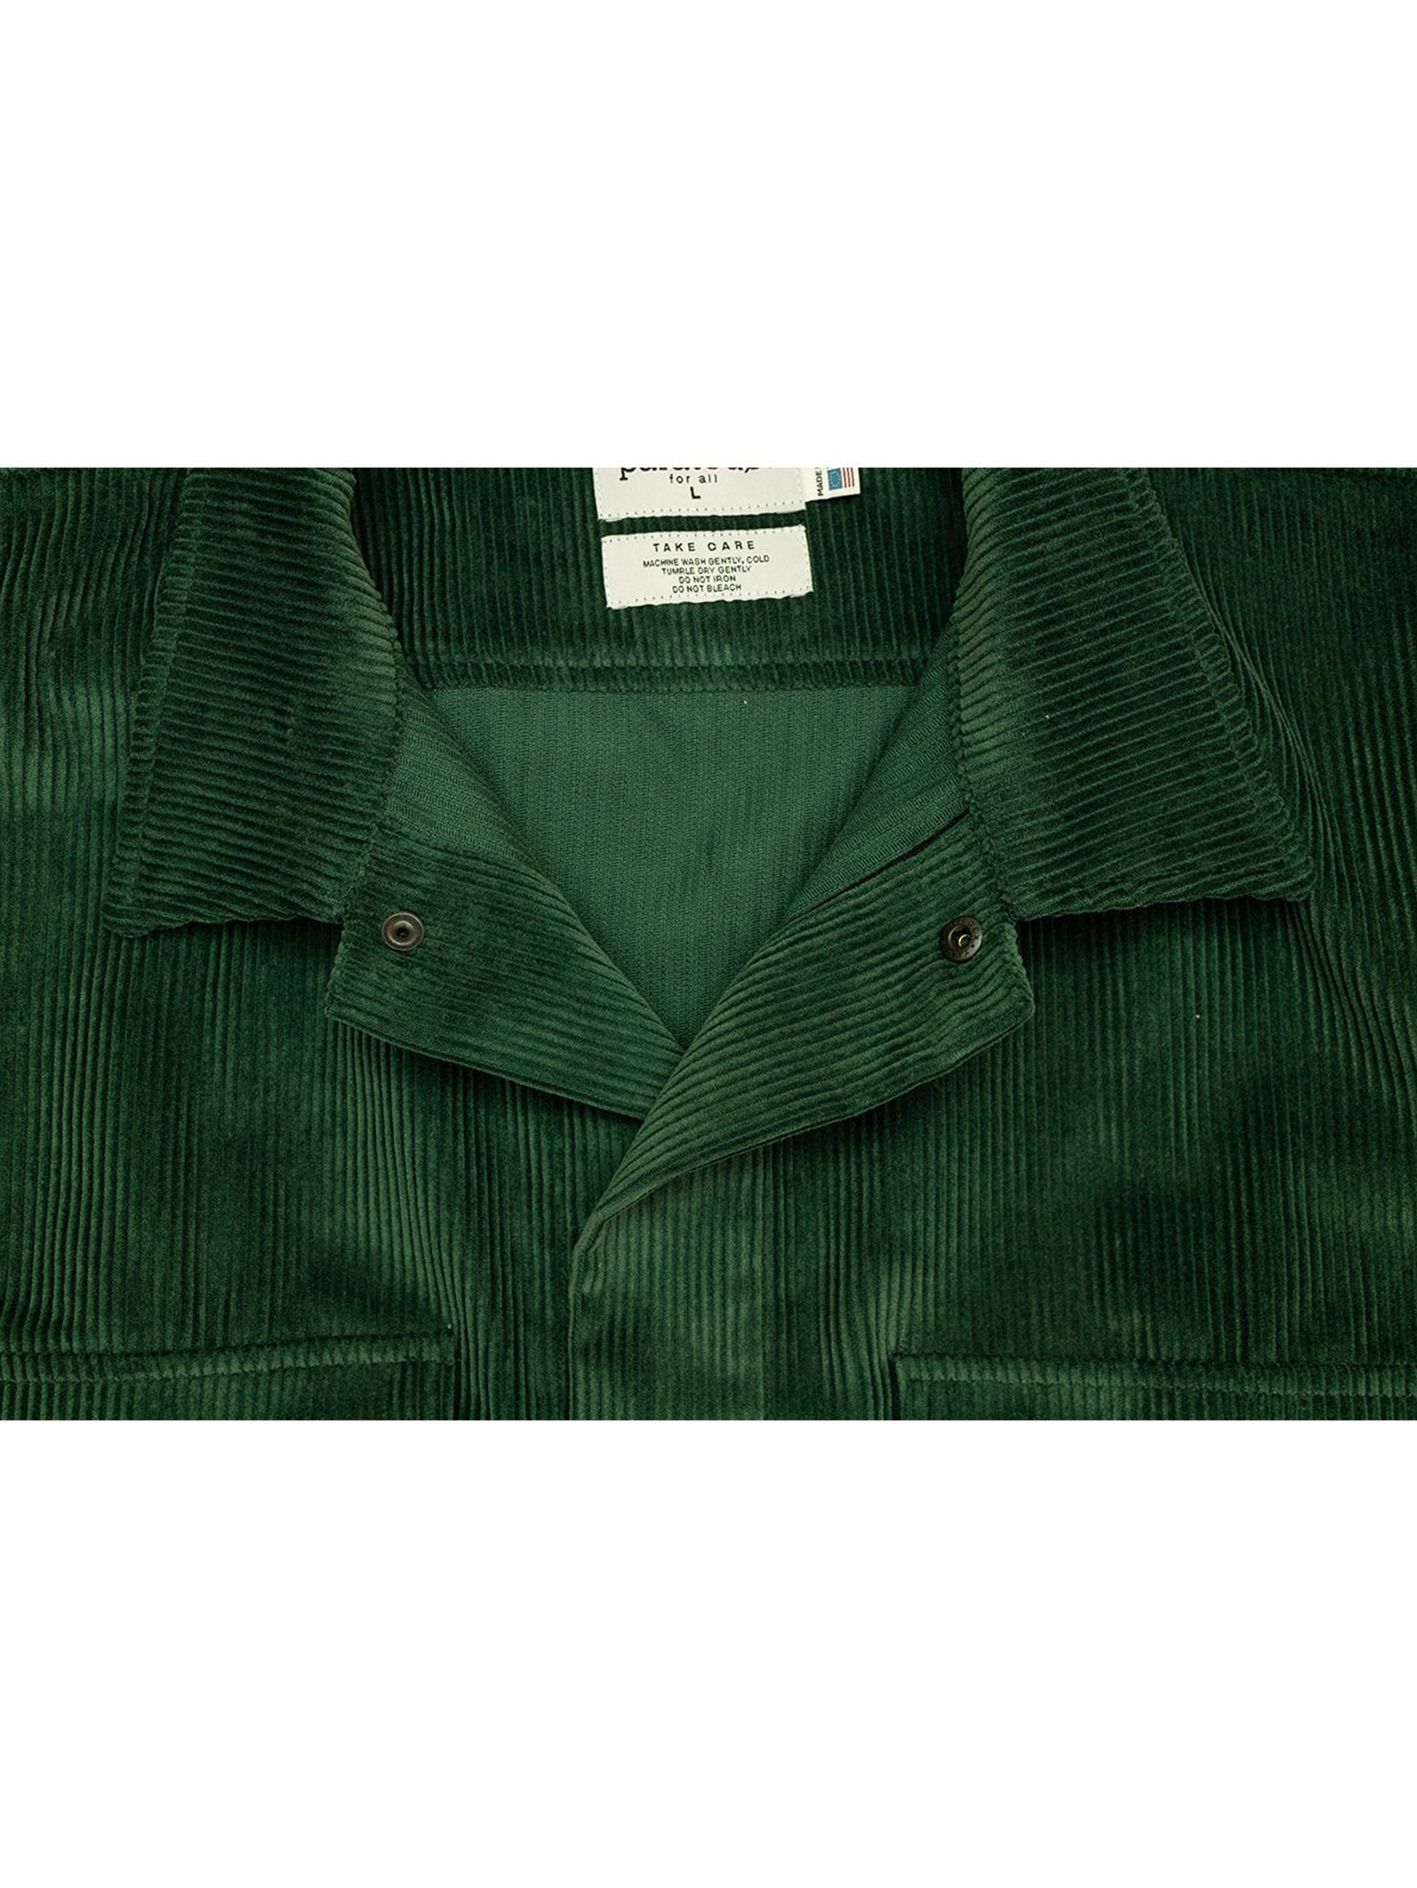 PARATODO - コーデュロイジャケット - London '68 Shirt - Evergreen